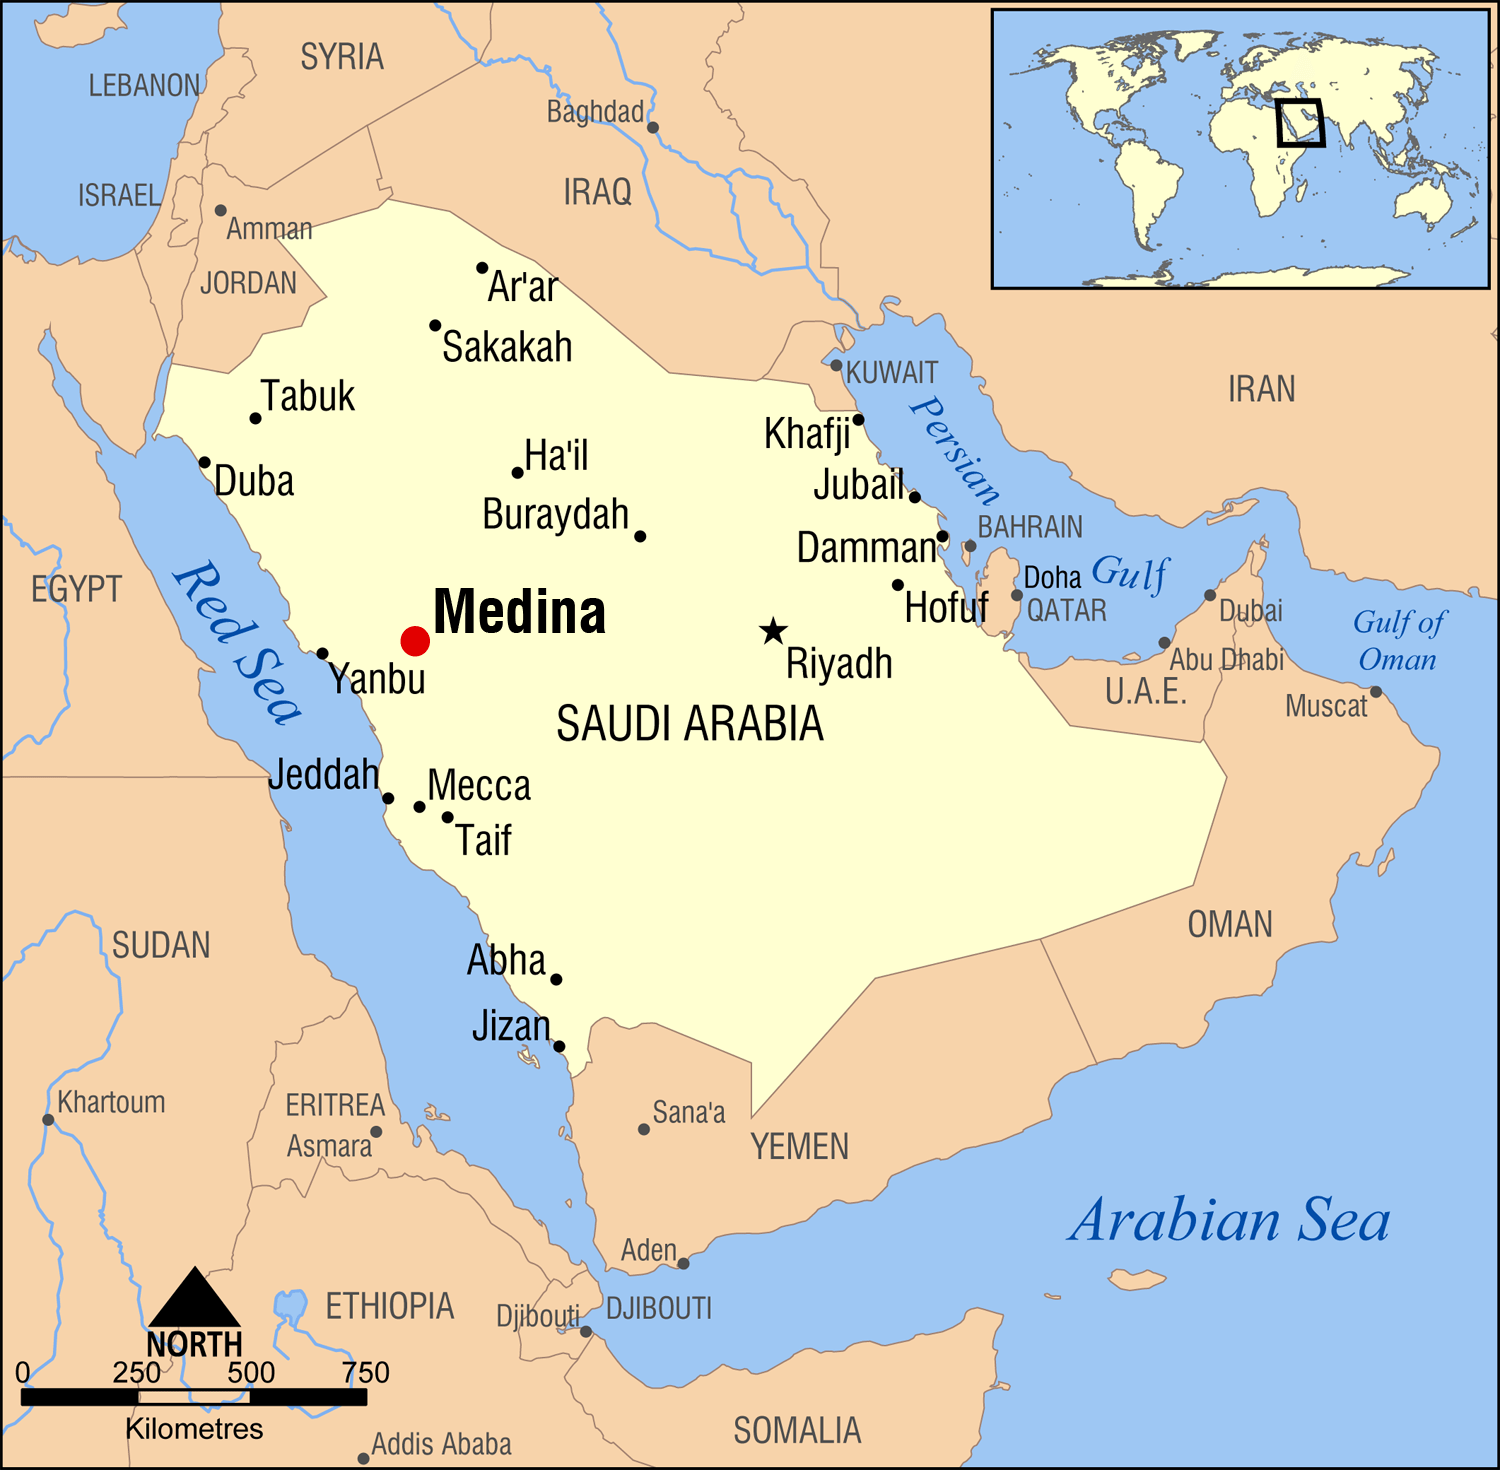 Υπογράφηκε συμφωνία οριοθέτησης της ΑΟΖ μεταξύ της Αιγύπτου και της Σαουδαραβίας στην Ερυθρά θάλασσα.